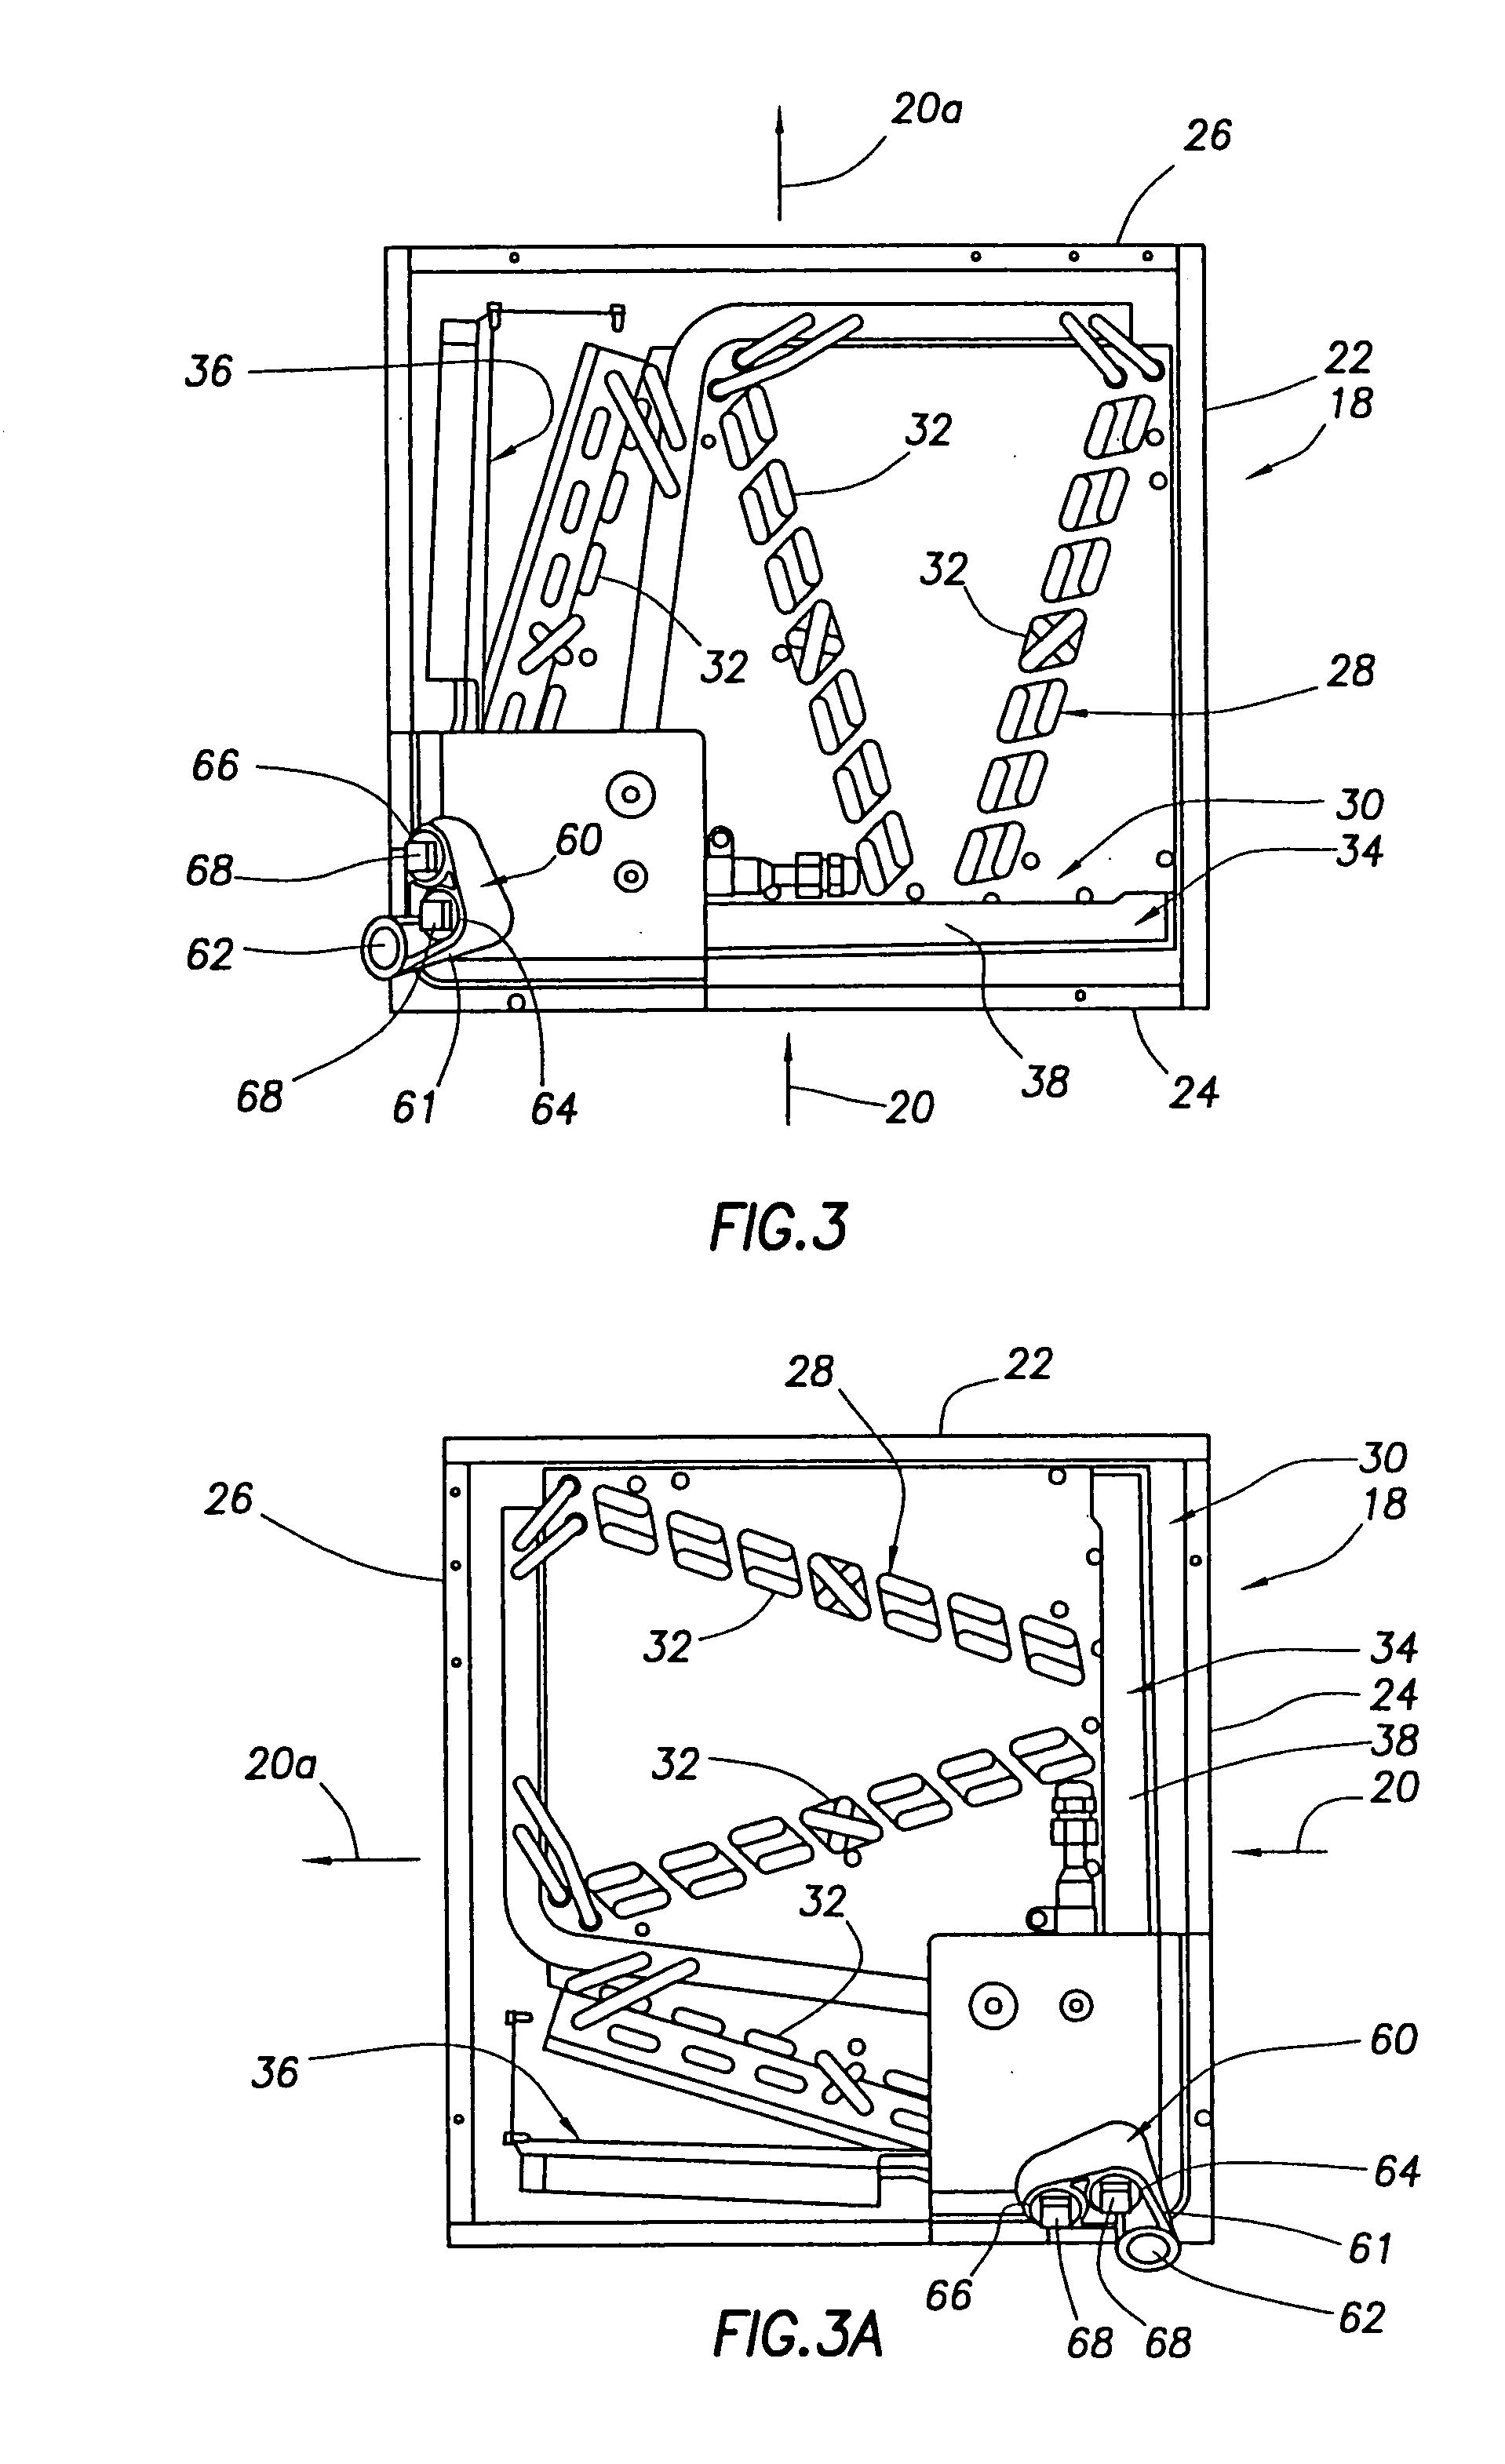 Coil drain pan apparatus